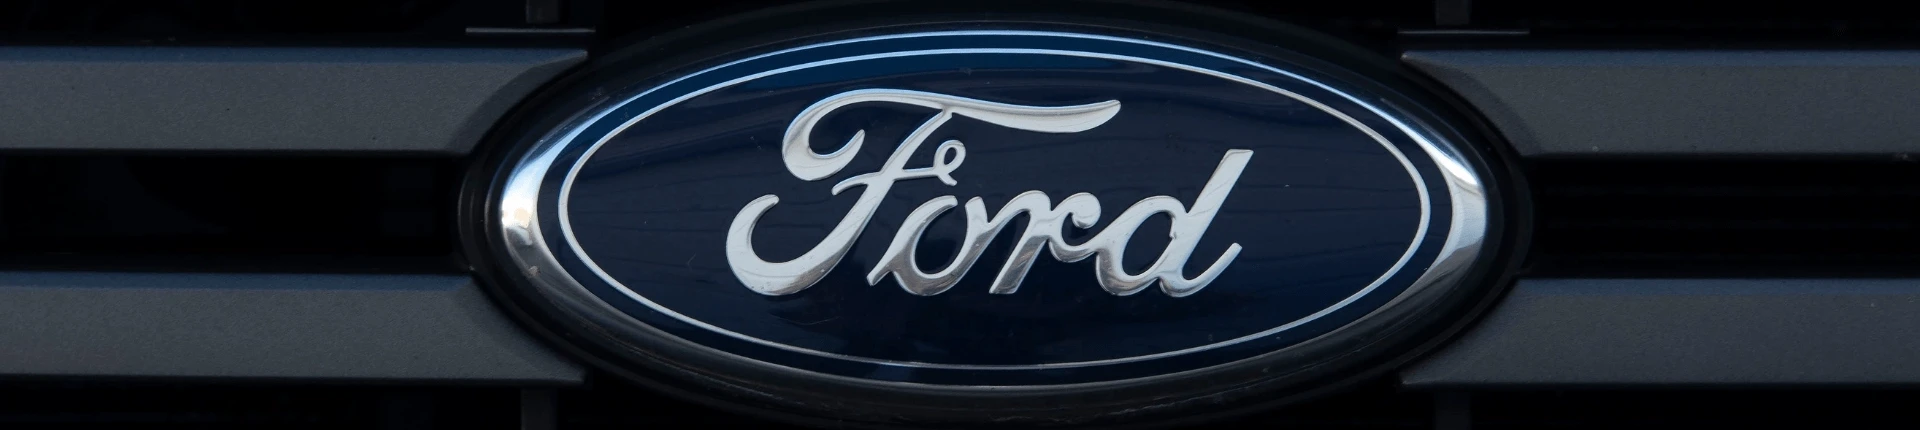 Ford Araçları Hakkında Genel Bilgiler